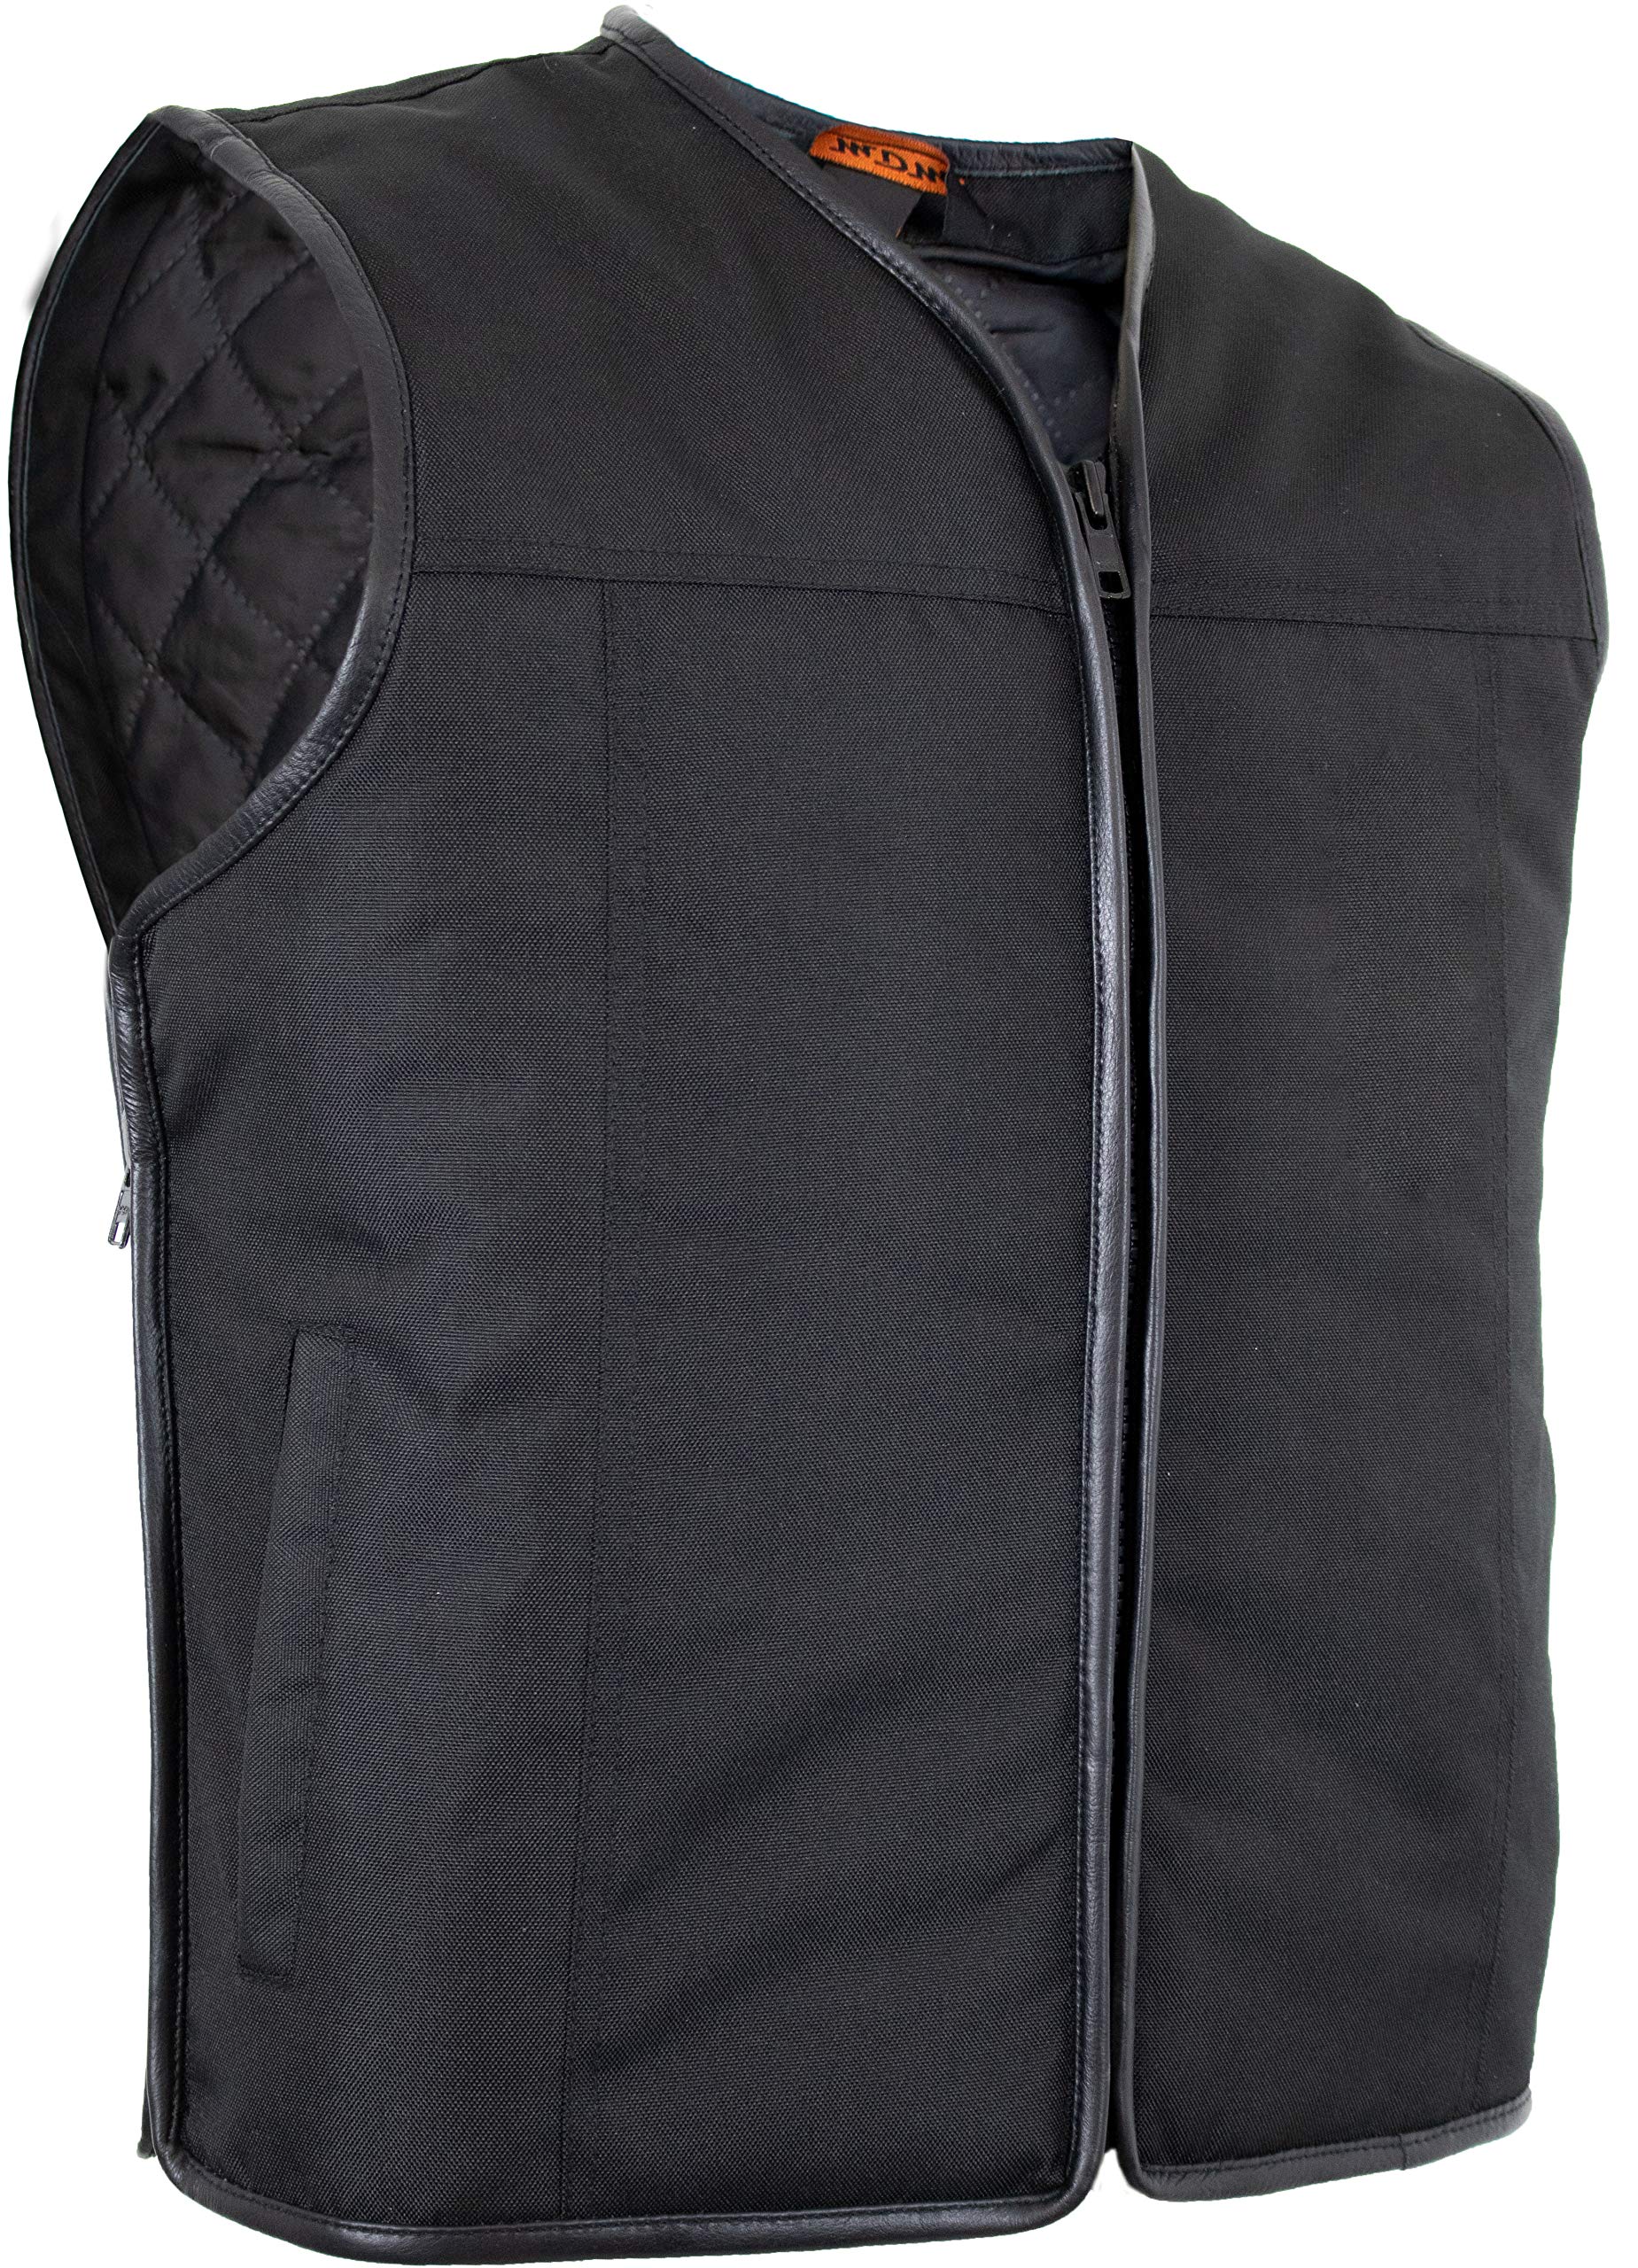 MDM Herren Textil Bikerweste in schwarz (Winddicht und Wasserabweisend) (XL) von MDM